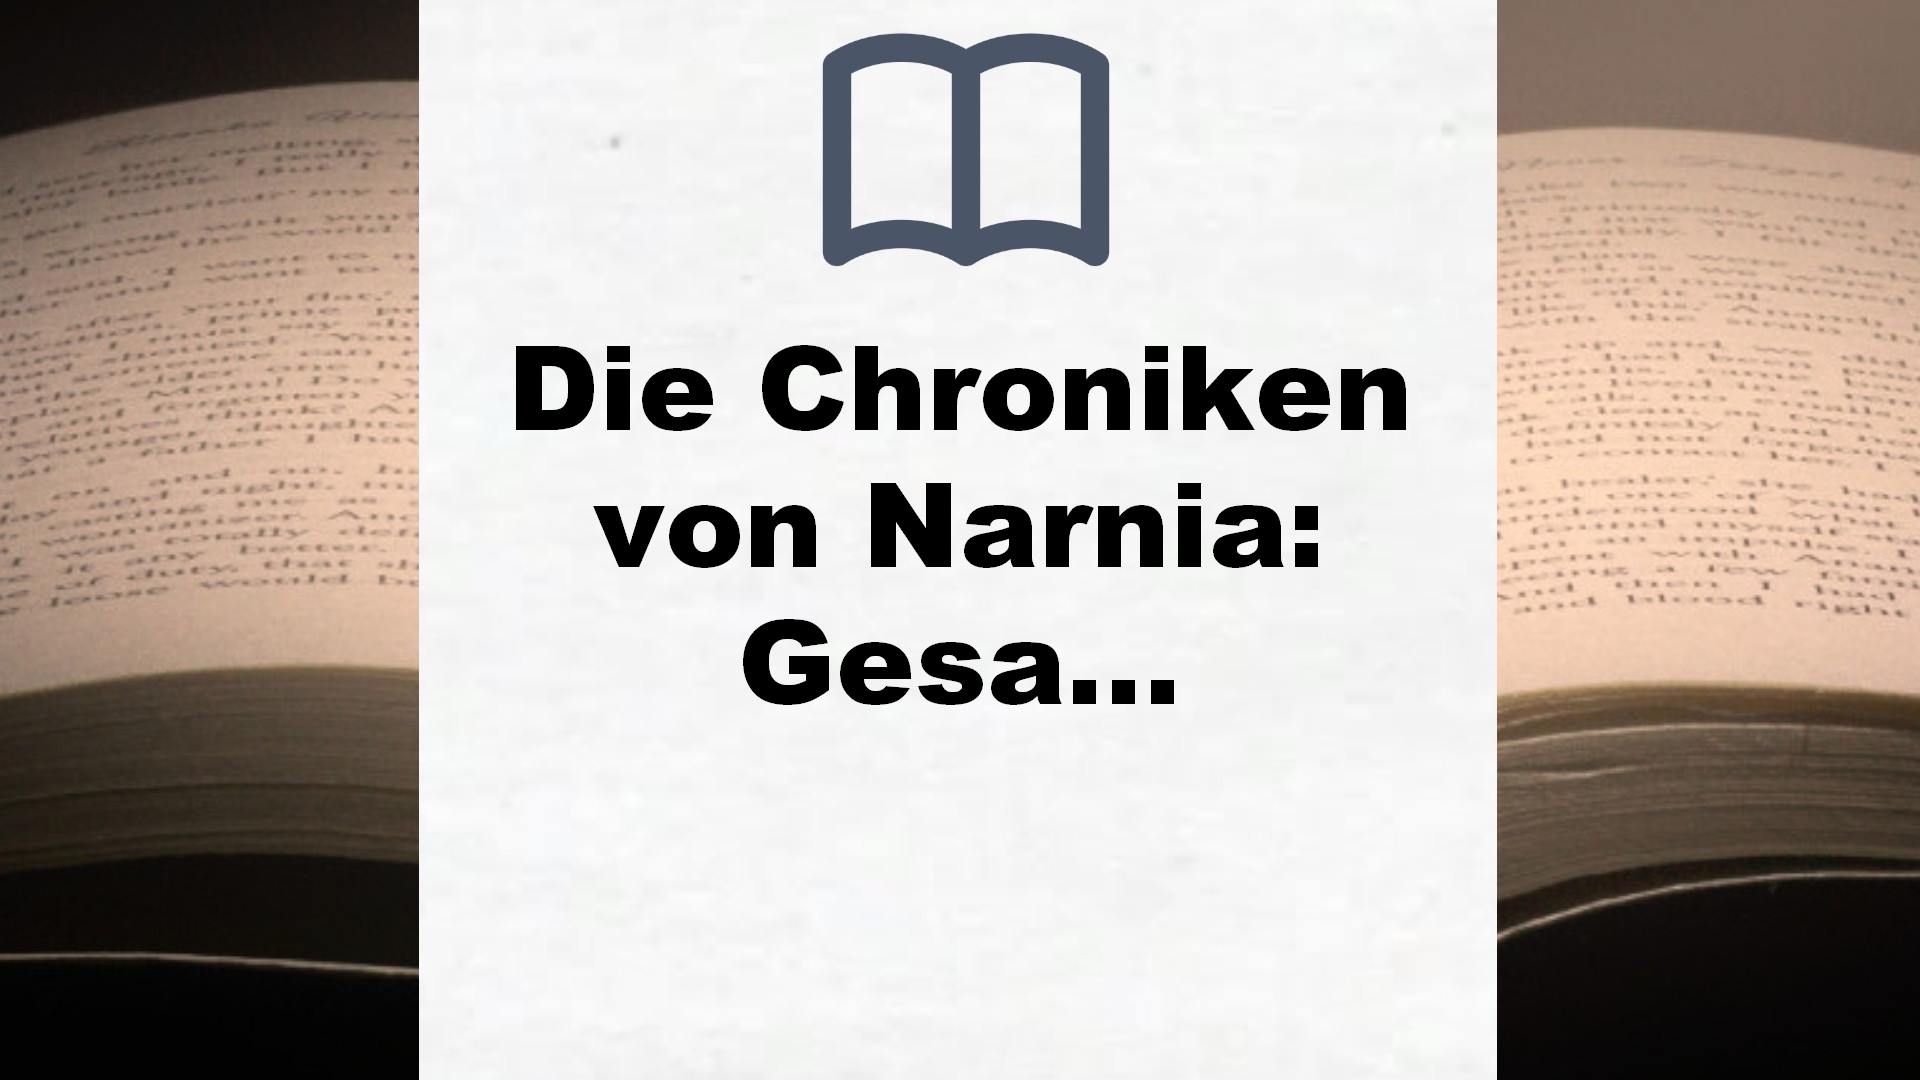 Die Chroniken von Narnia: Gesamtausgabe im Schuber TB – Buchrezension